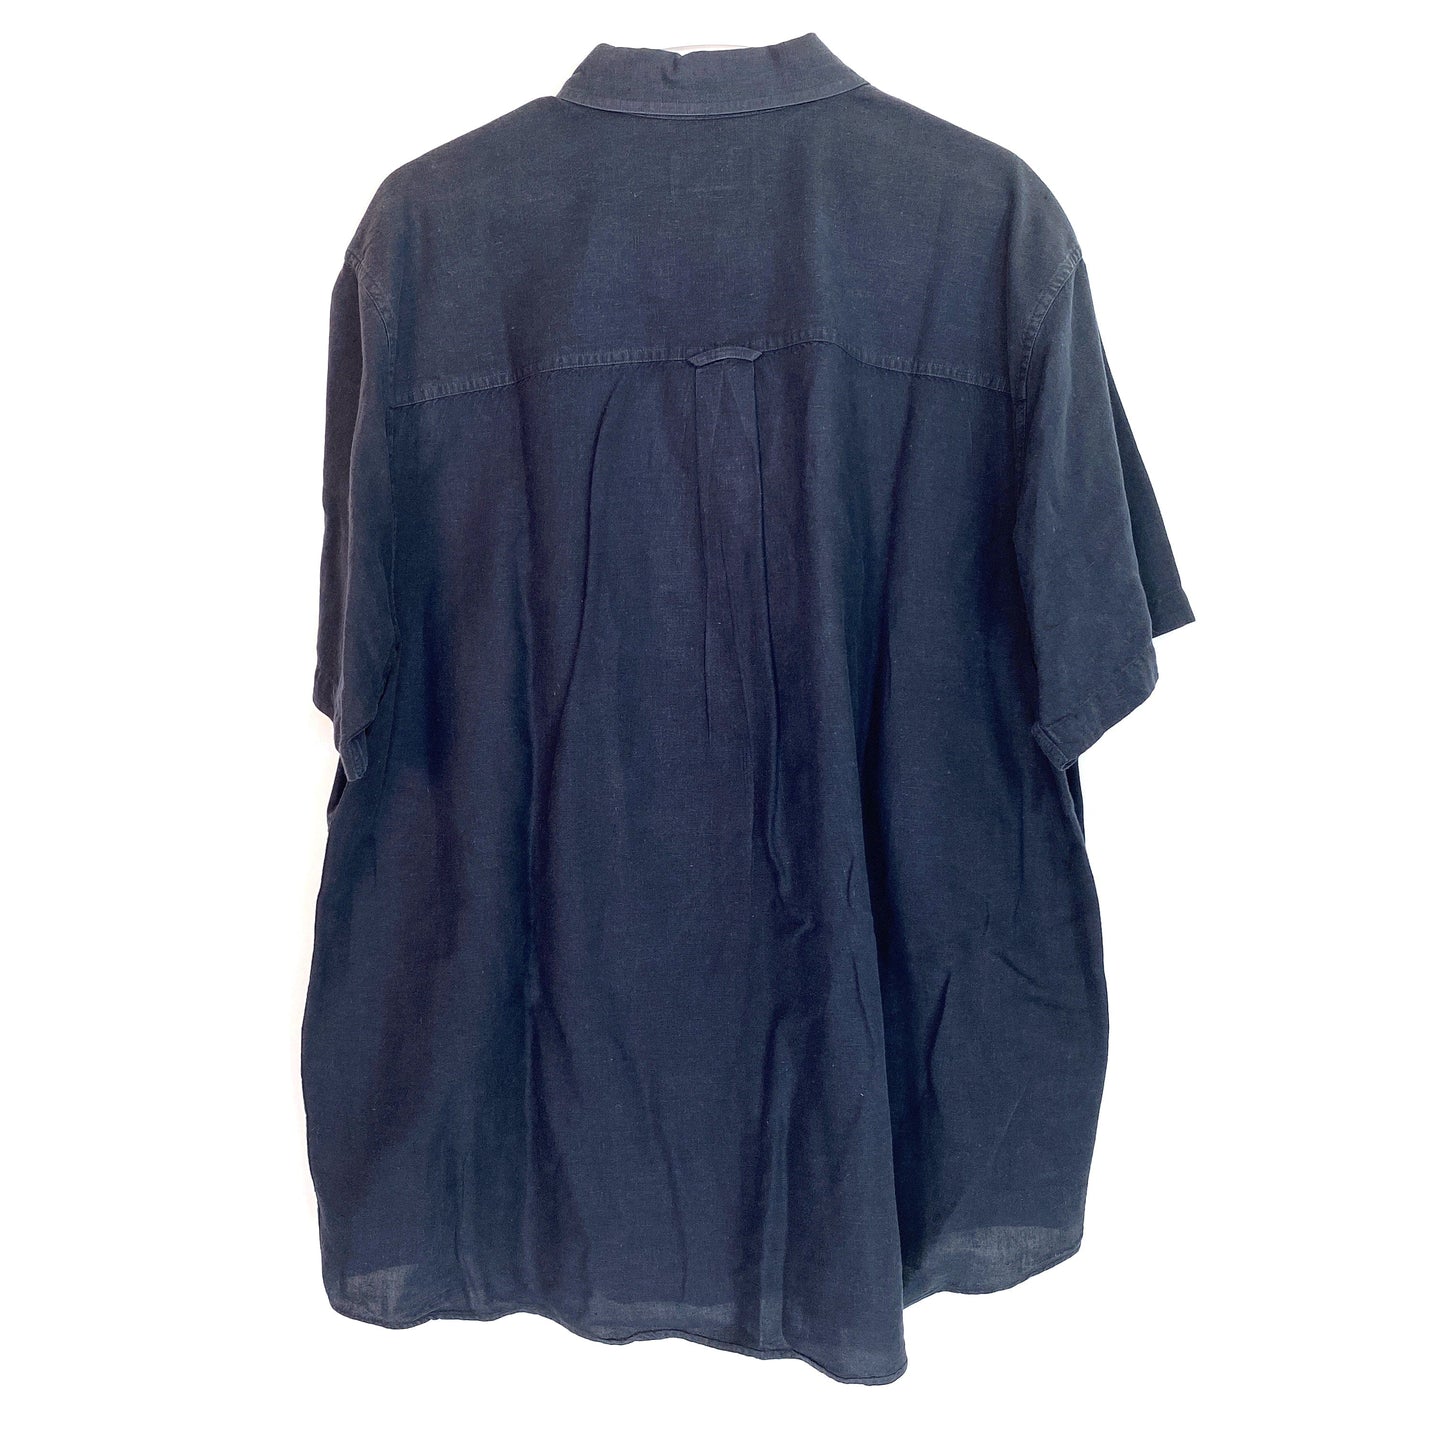 Chaps Ralph Lauren Short Sleeve Button Down Dress Shirt, Dark Blue - Size XL